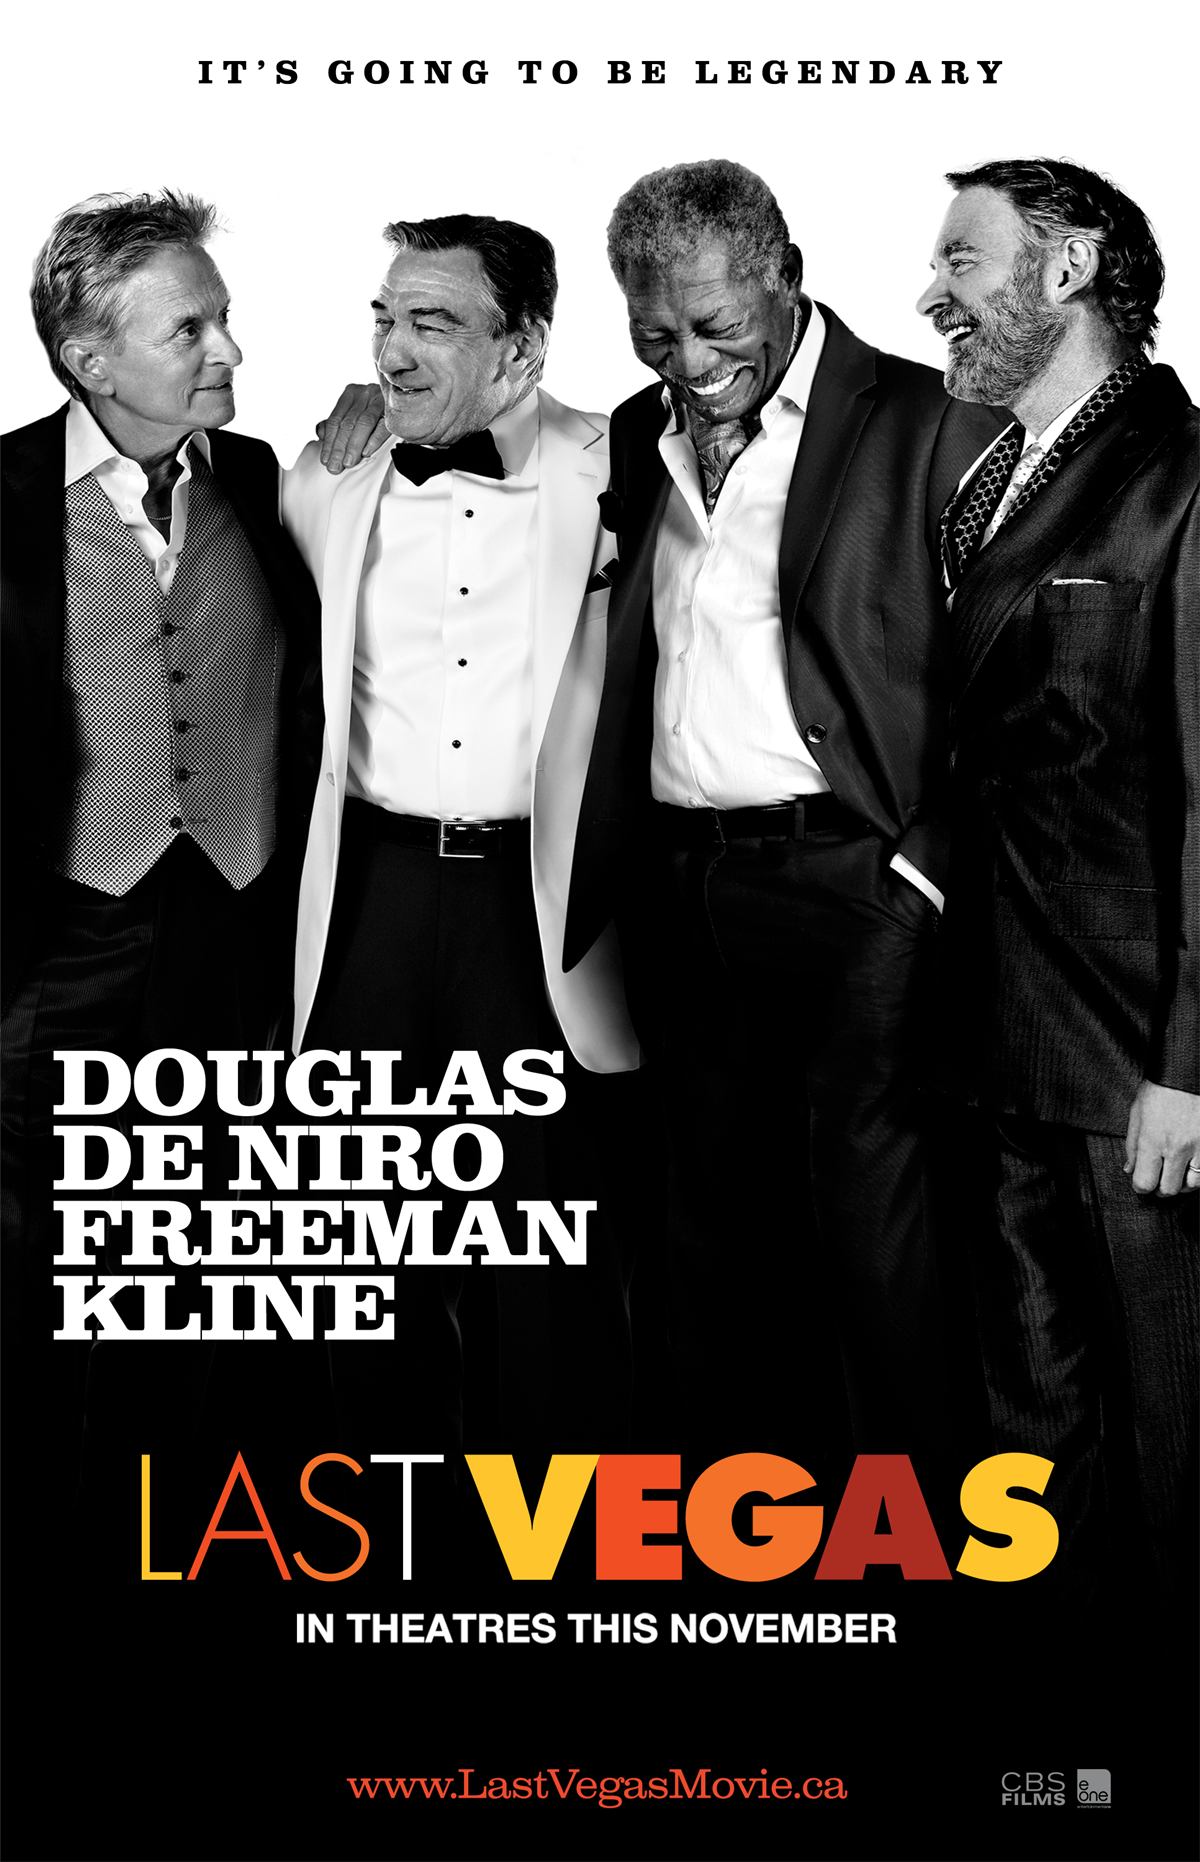 Last Vegas 2013